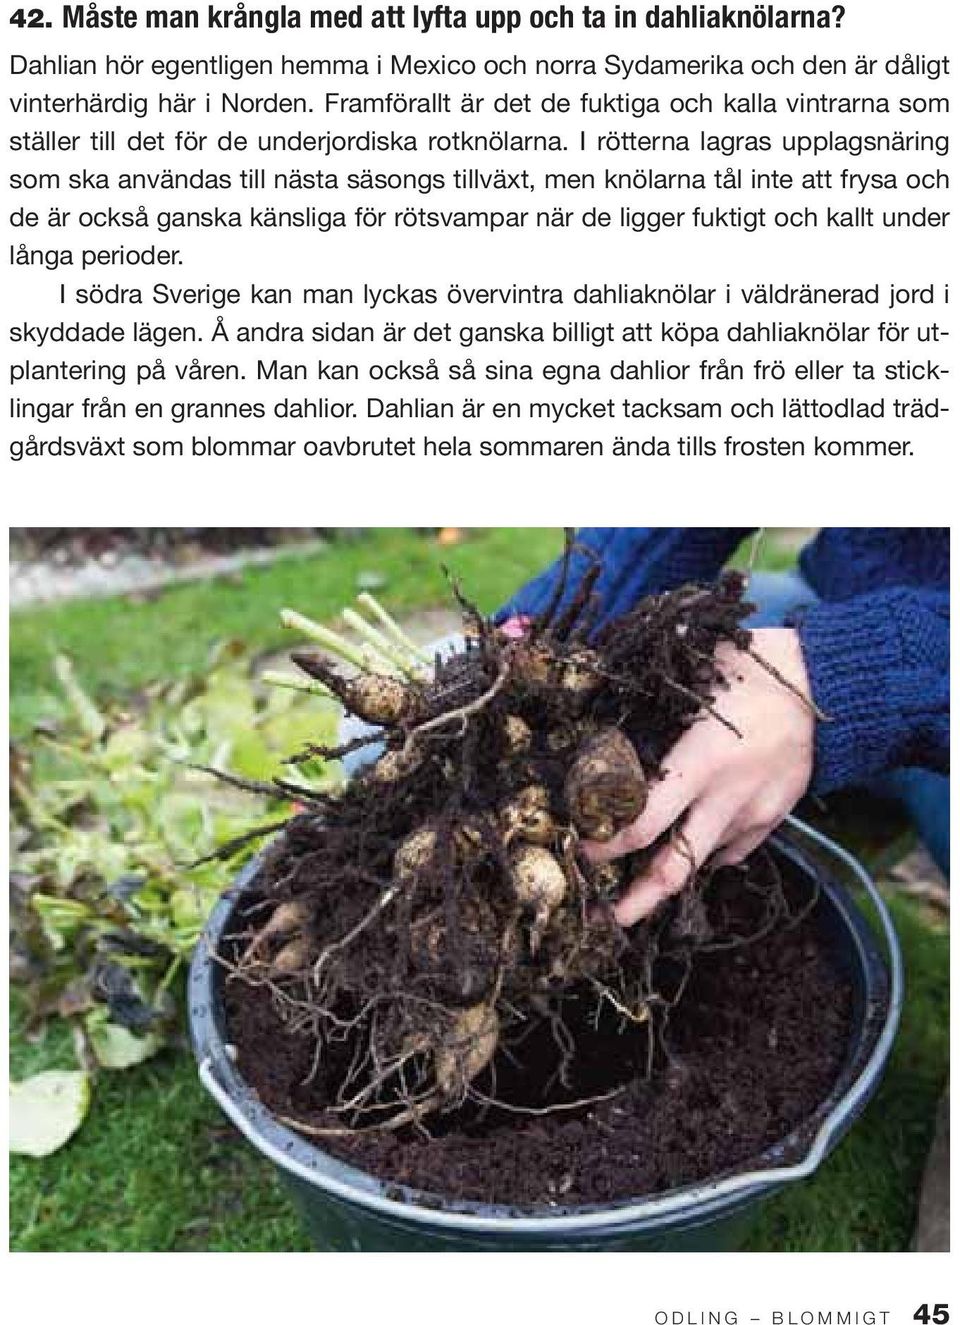 I rötterna lagras upplagsnäring som ska användas till nästa säsongs tillväxt, men knölarna tål inte att frysa och de är också ganska känsliga för rötsvampar när de ligger fuktigt och kallt under